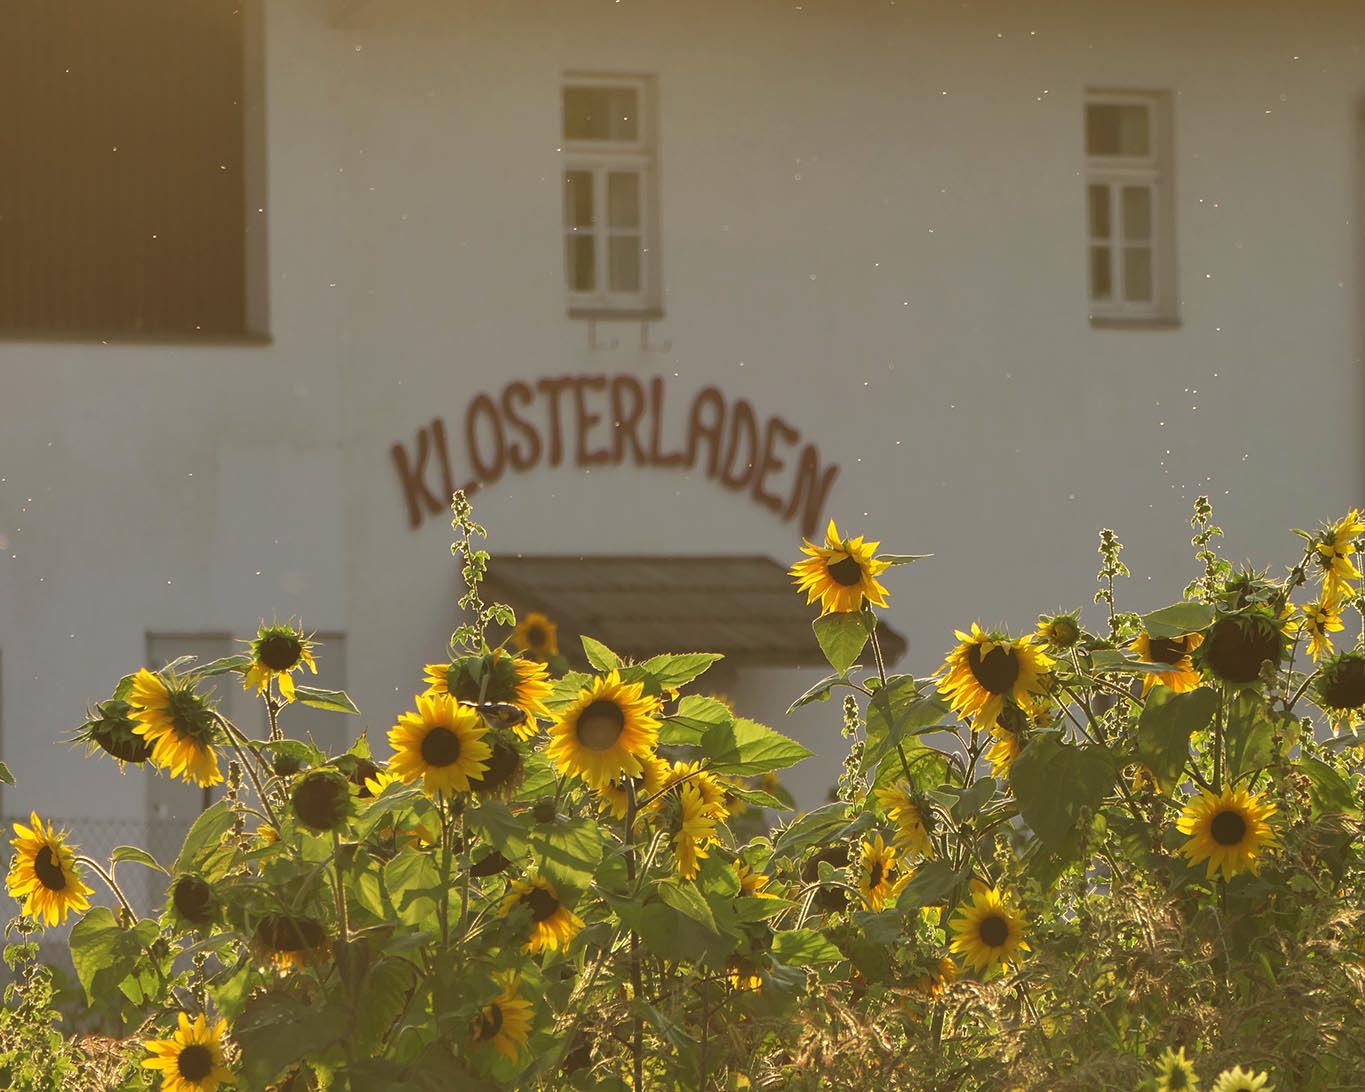 Klosterladen Wernberg geschmückt mit Sonnenblumen im Abendlicht.